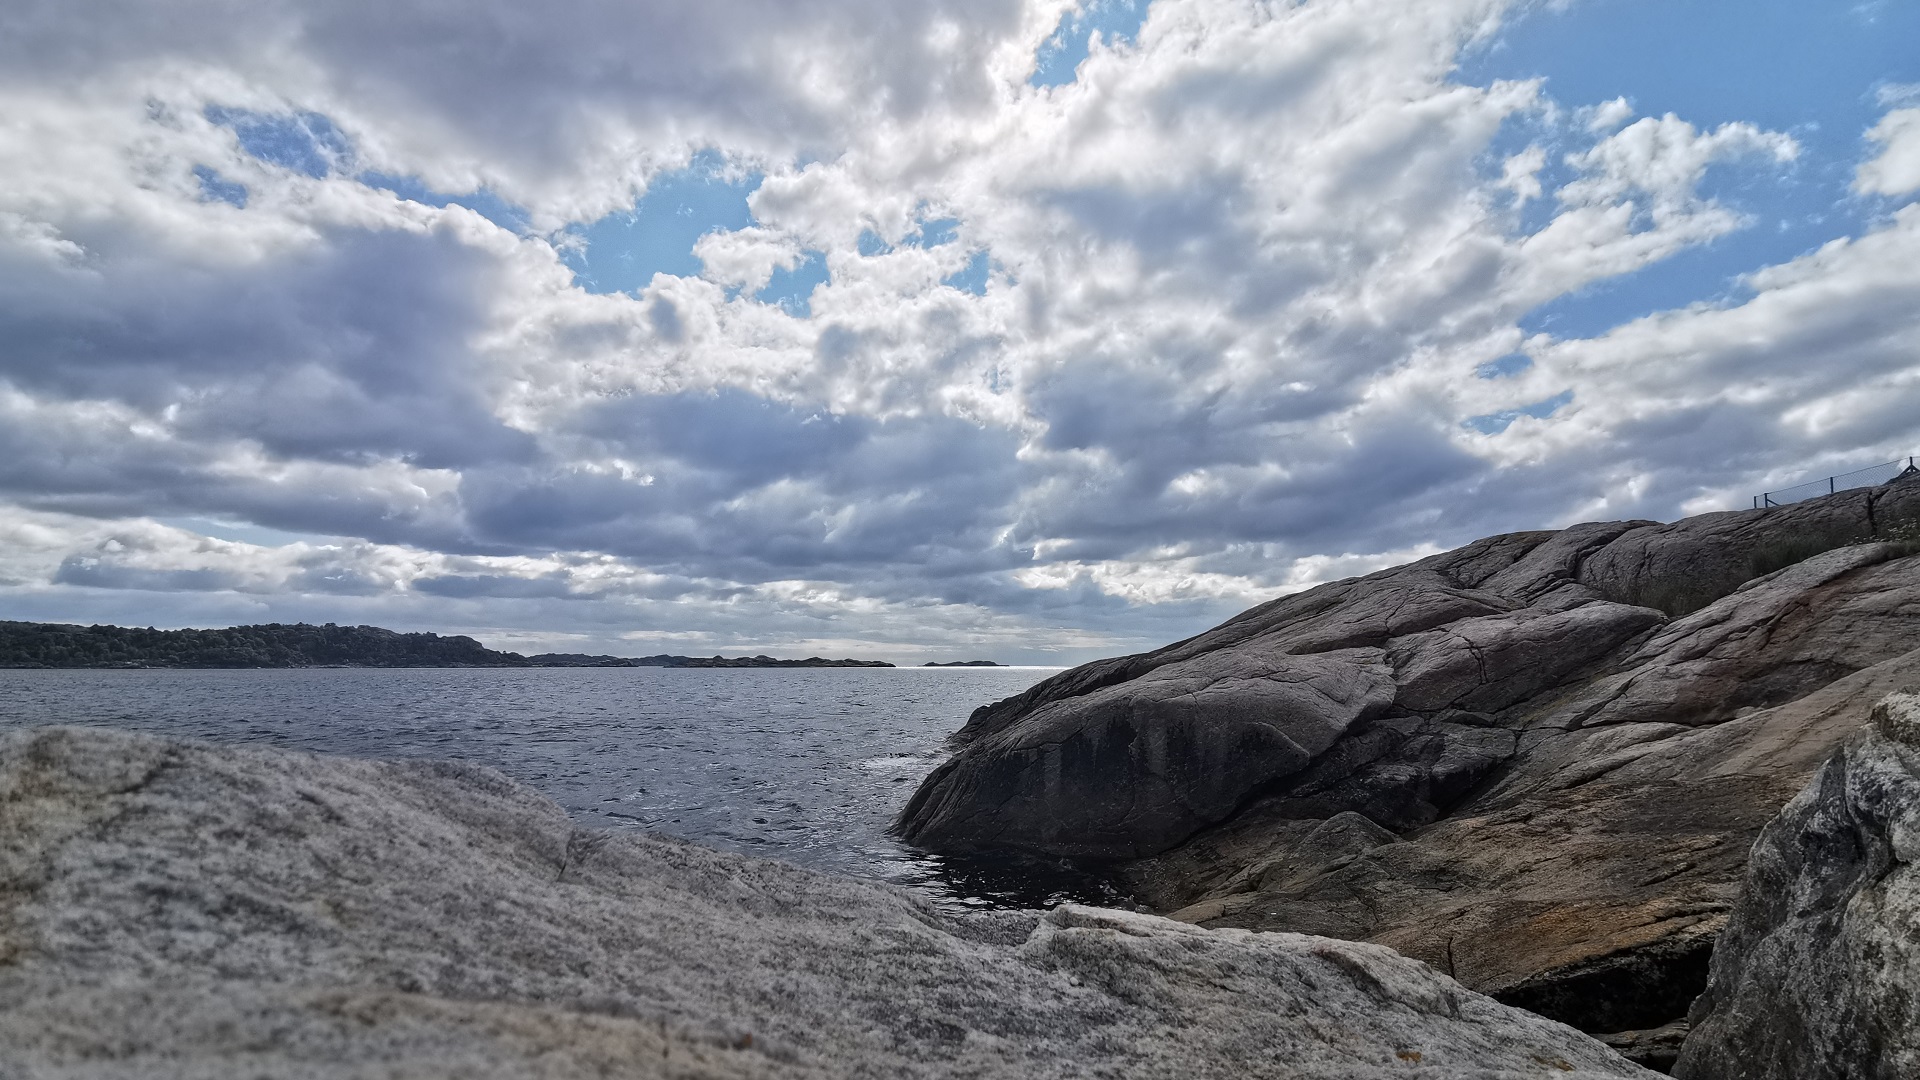 Blick über das Meer in Båly Brygge bei leicht bewölktem Himmel, die Felsen im Vordergrund sind ein guter Stellplatz zum Angeln